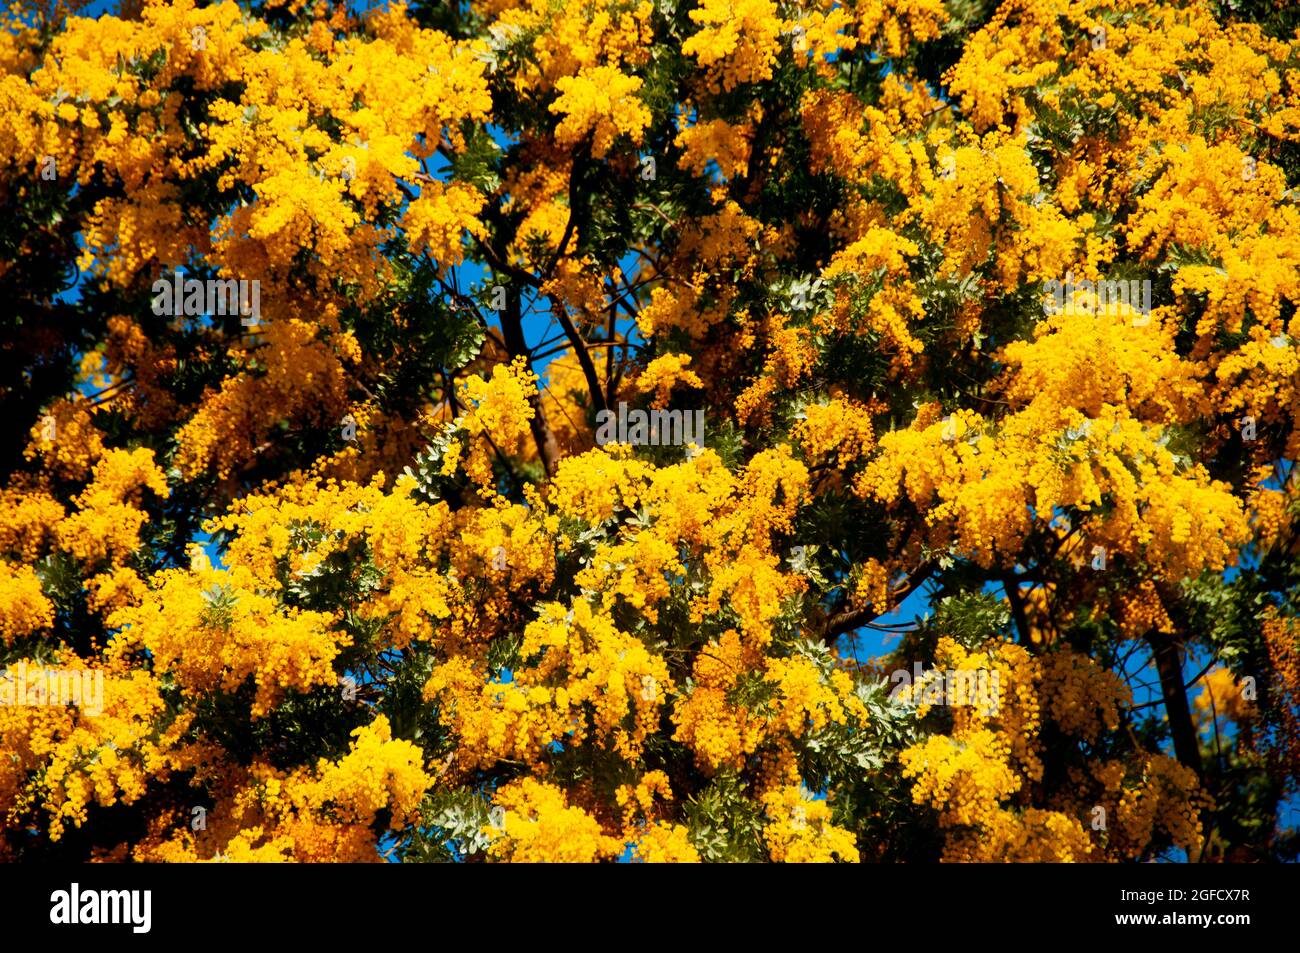 Acacia Dealbata Flowering Plant - Australia Stock Photo